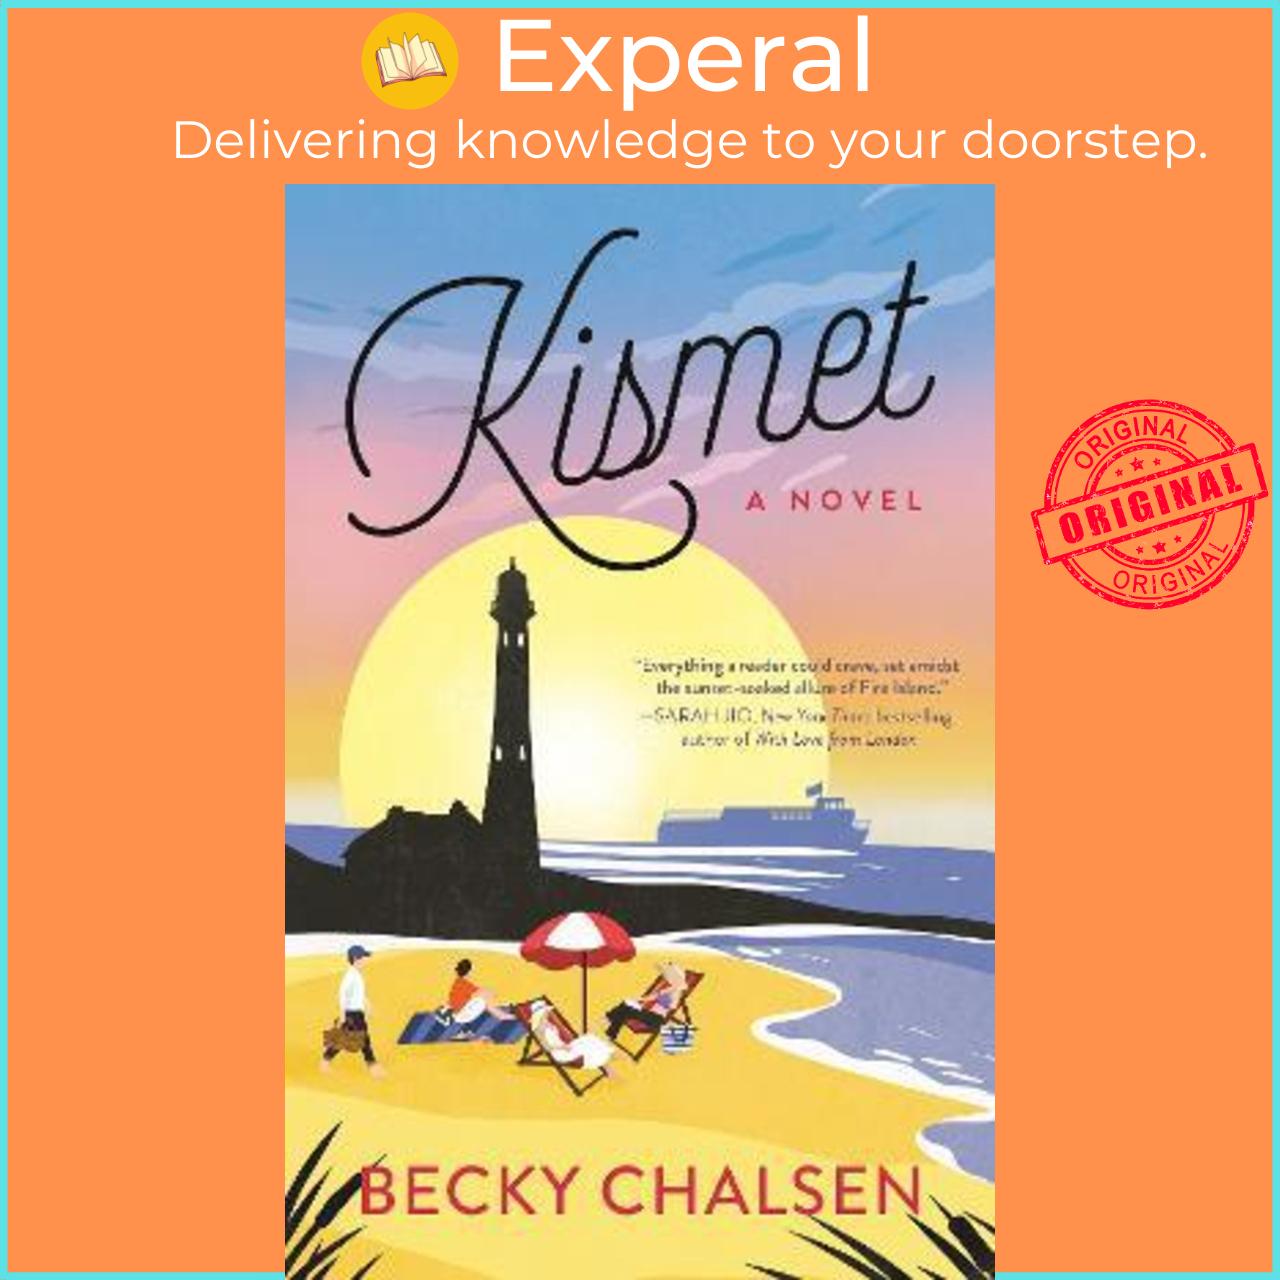 Hình ảnh Sách - Kismet : A Novel by Becky Chalsen (UK edition, paperback)